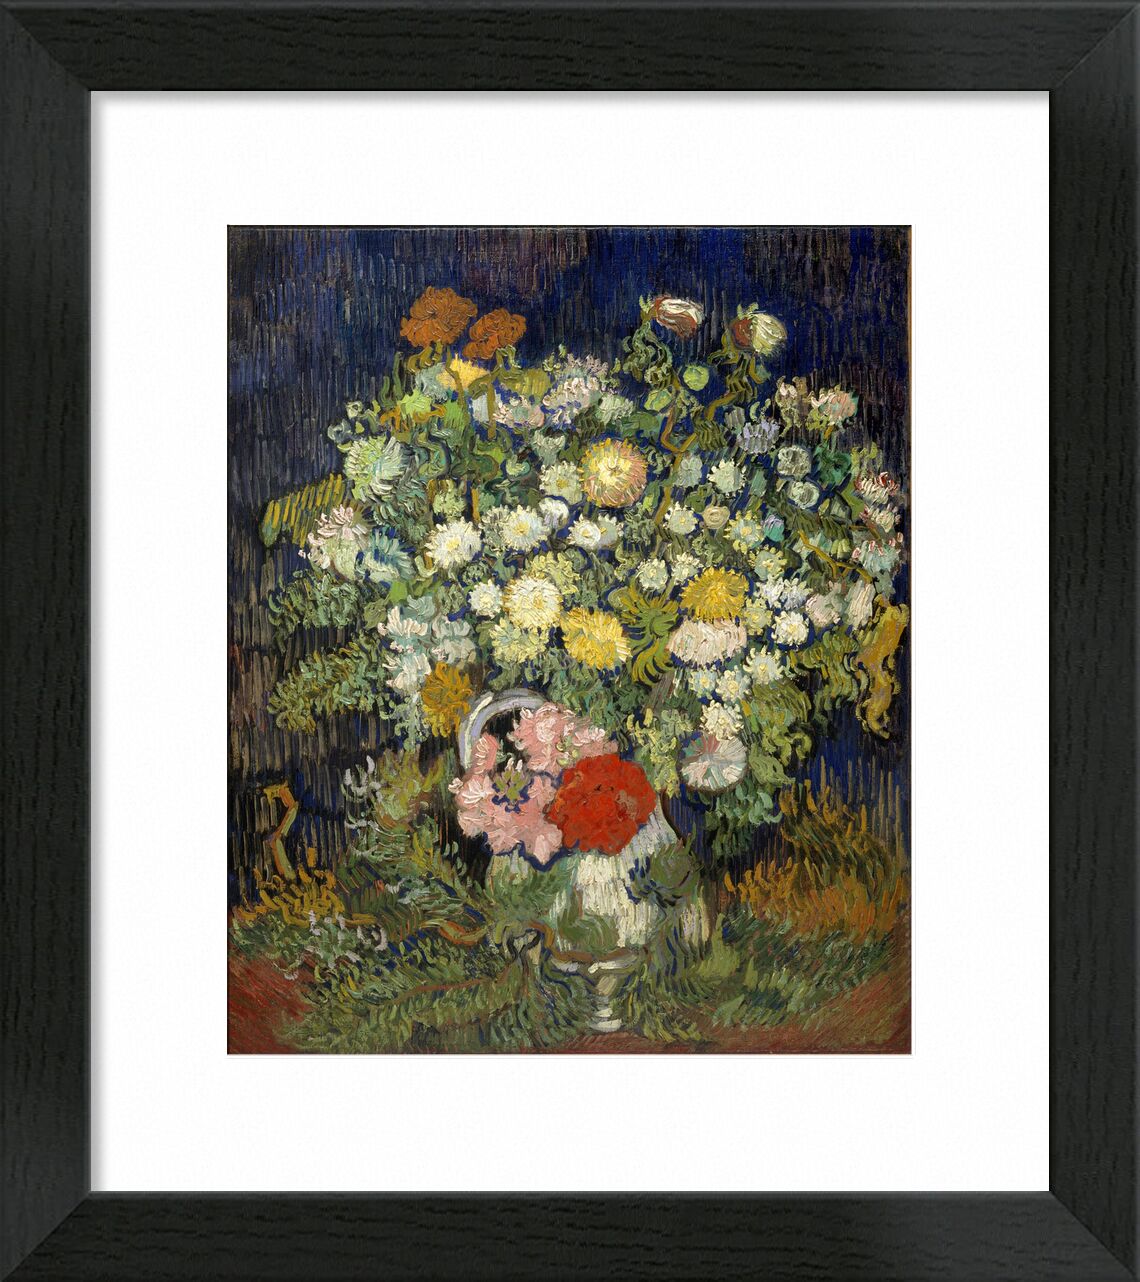 Blumenstrauß in einer Vase - Van Gogh von Bildende Kunst, Prodi Art, Farben, Verdures, Blumenstrauß in einer Vase, Van gogh, Blumen, Vase